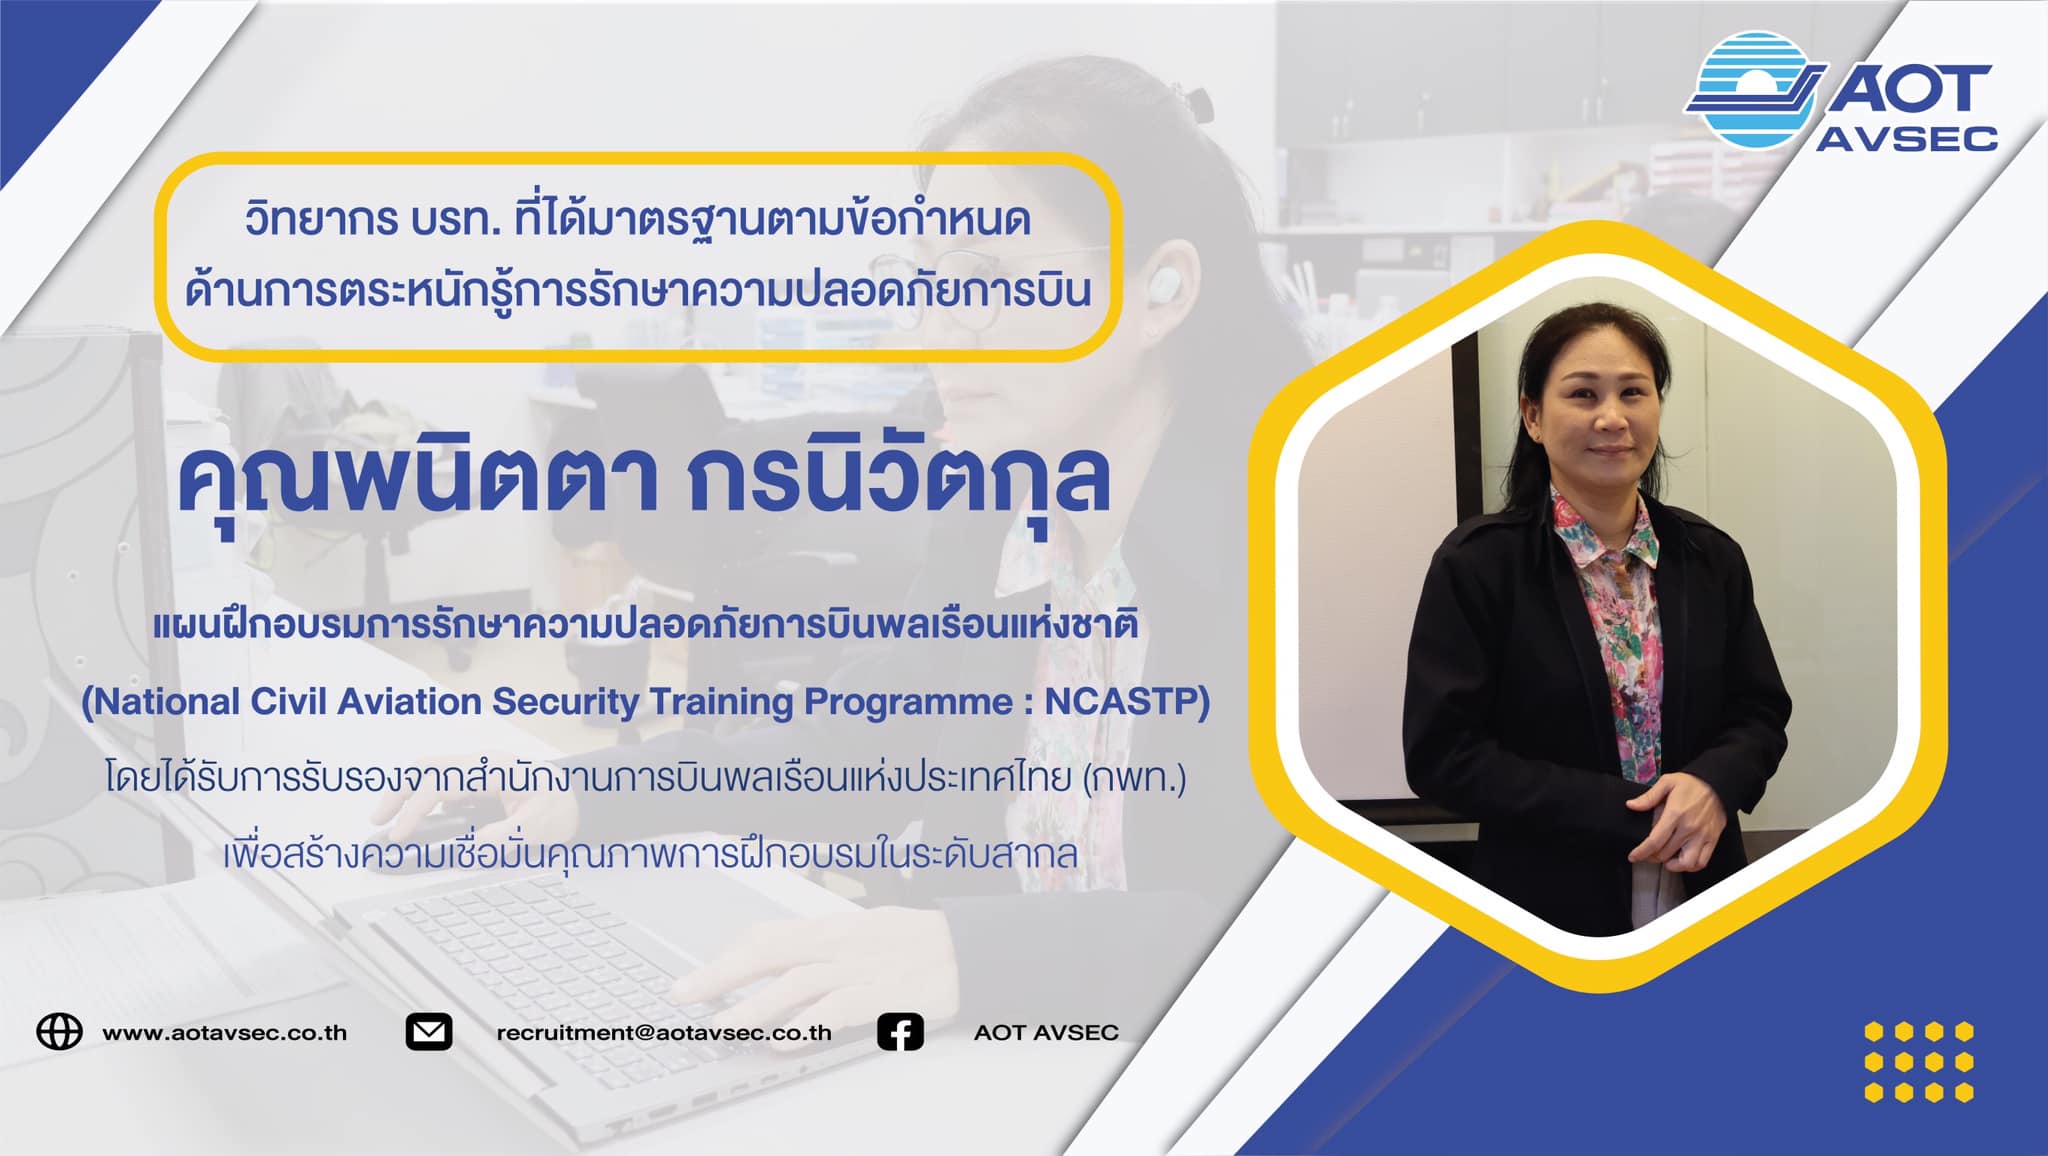 คุณพนิตตา กรนิวัตกุล ครูผู้สอนด้านการรักษาความปลอดภัย (ด้านการตระหนักรู้การรักษาความปลอดภัยการบิน : Security Awareness Instructor)